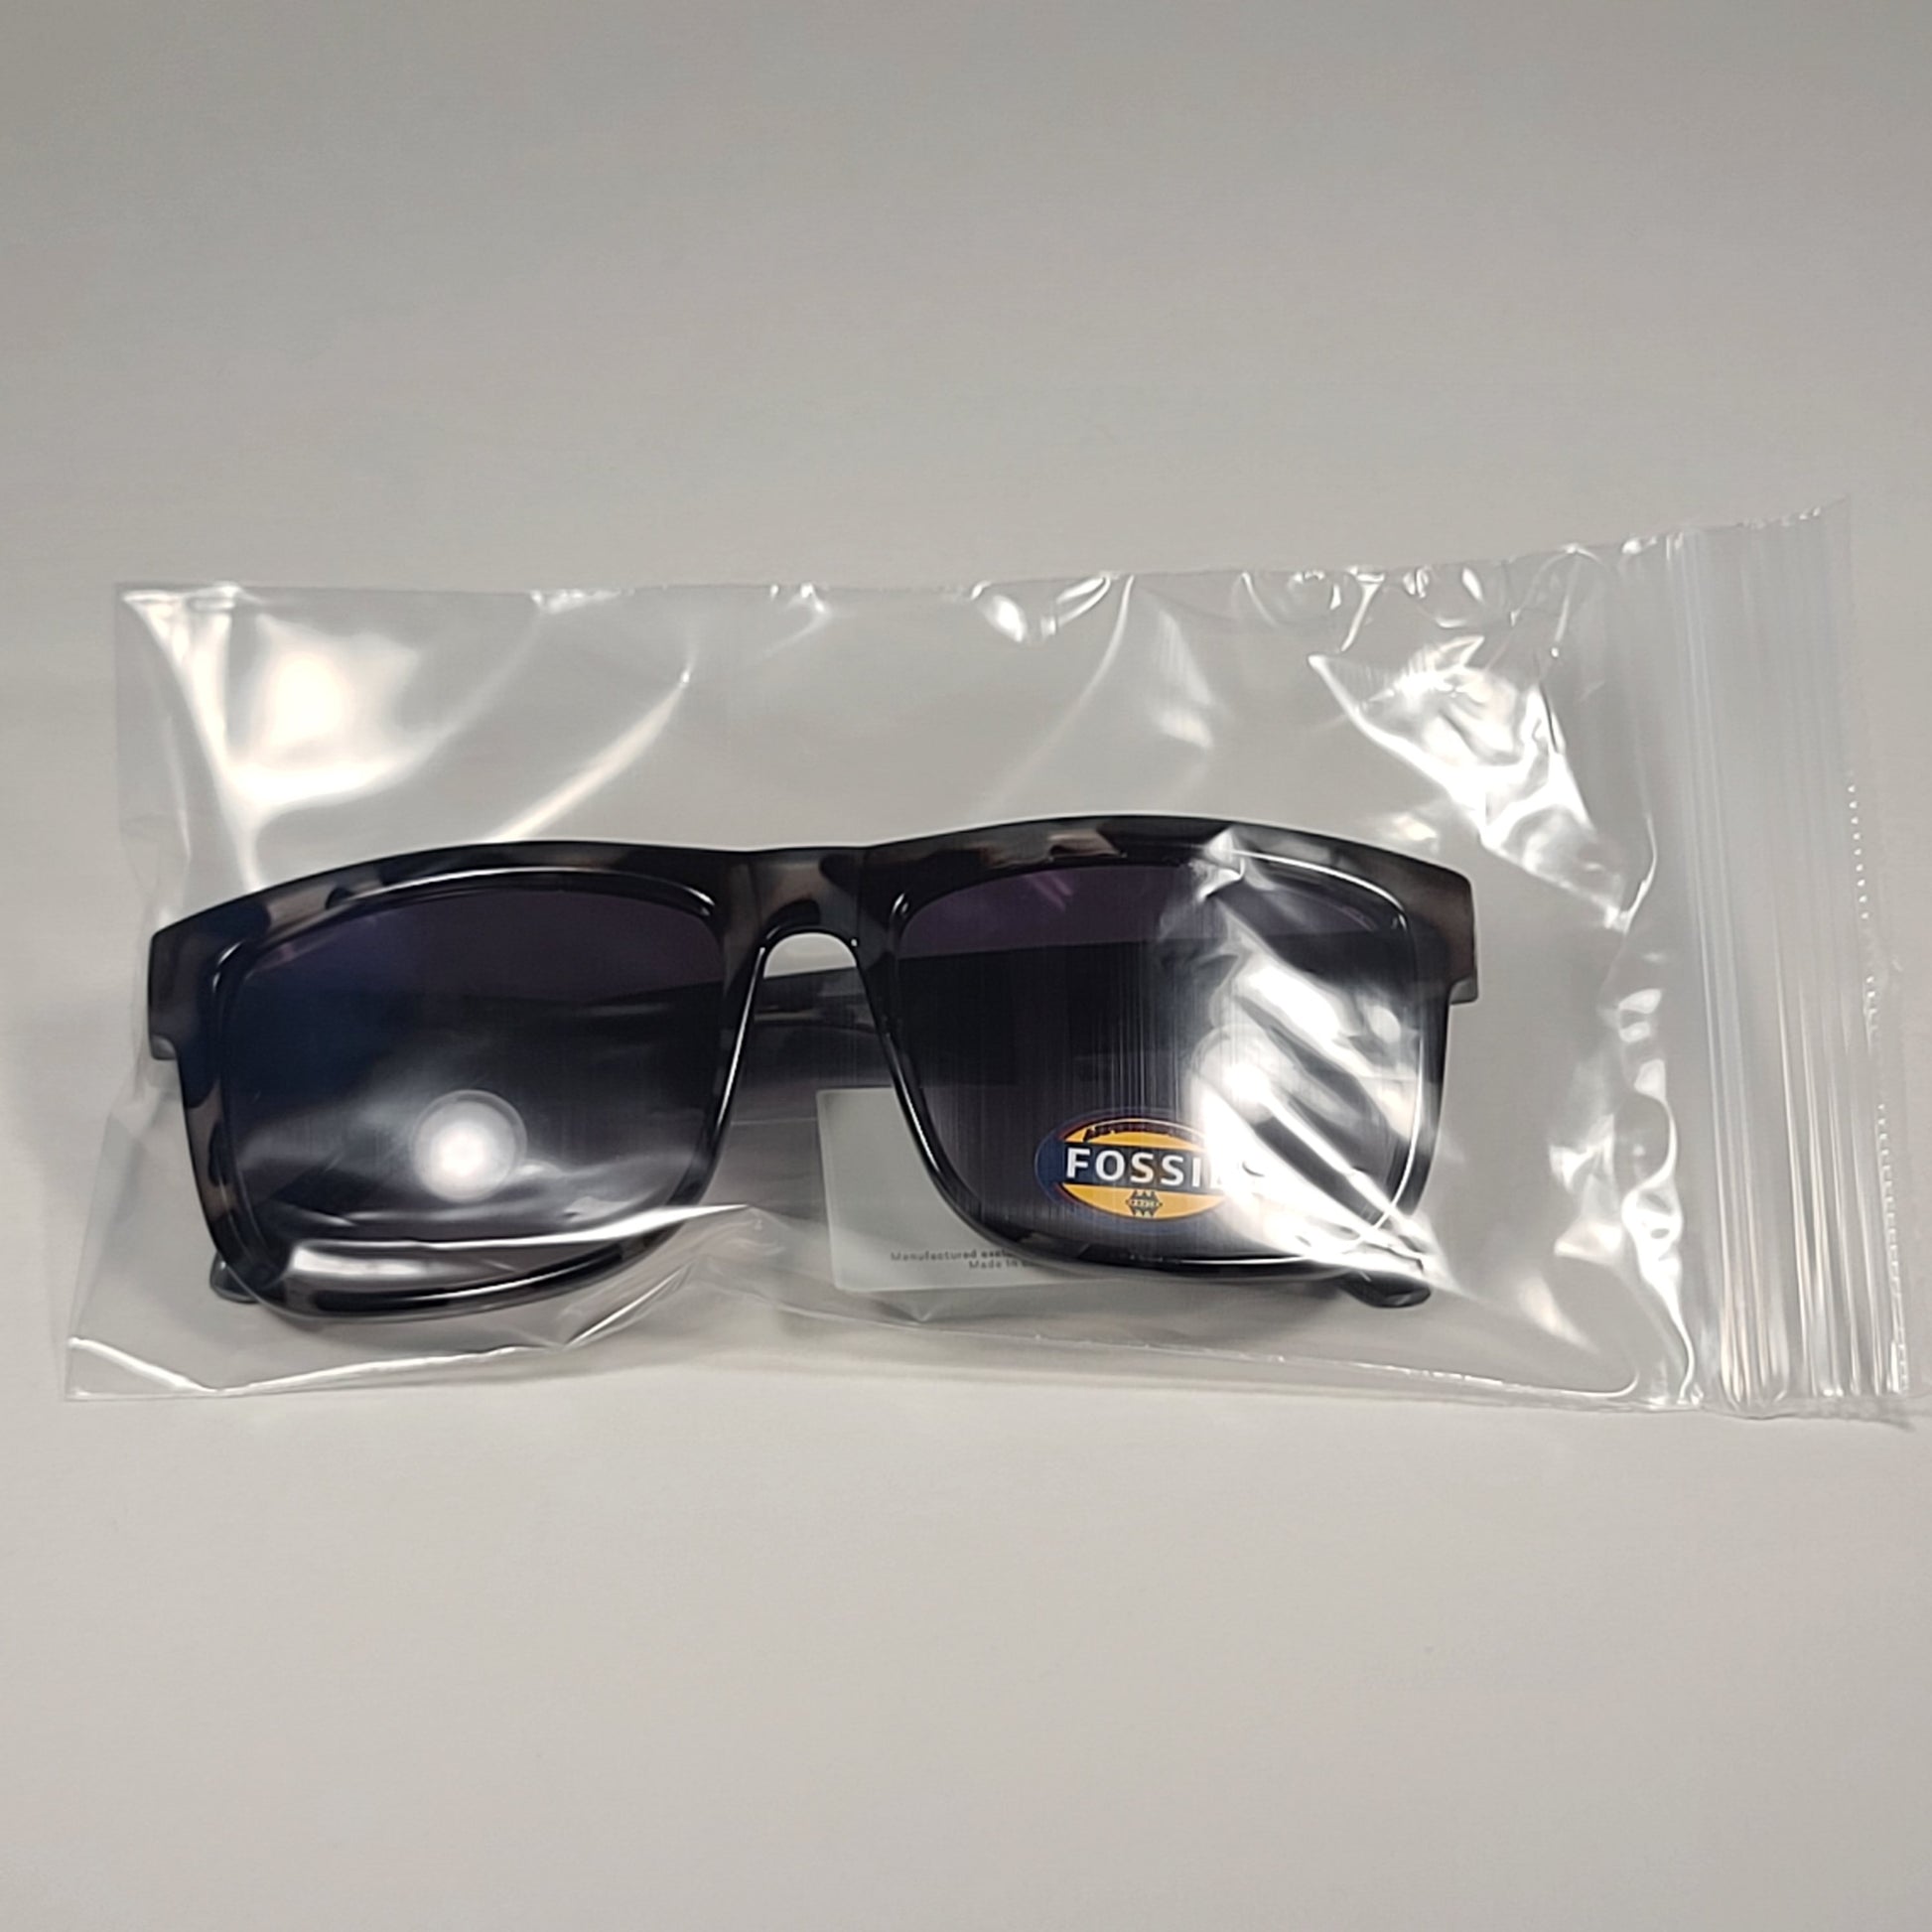 Fossil FM145 Men’s Square Sunglasses White Tortoise Frame Gray Gradient Lens - Sunglasses